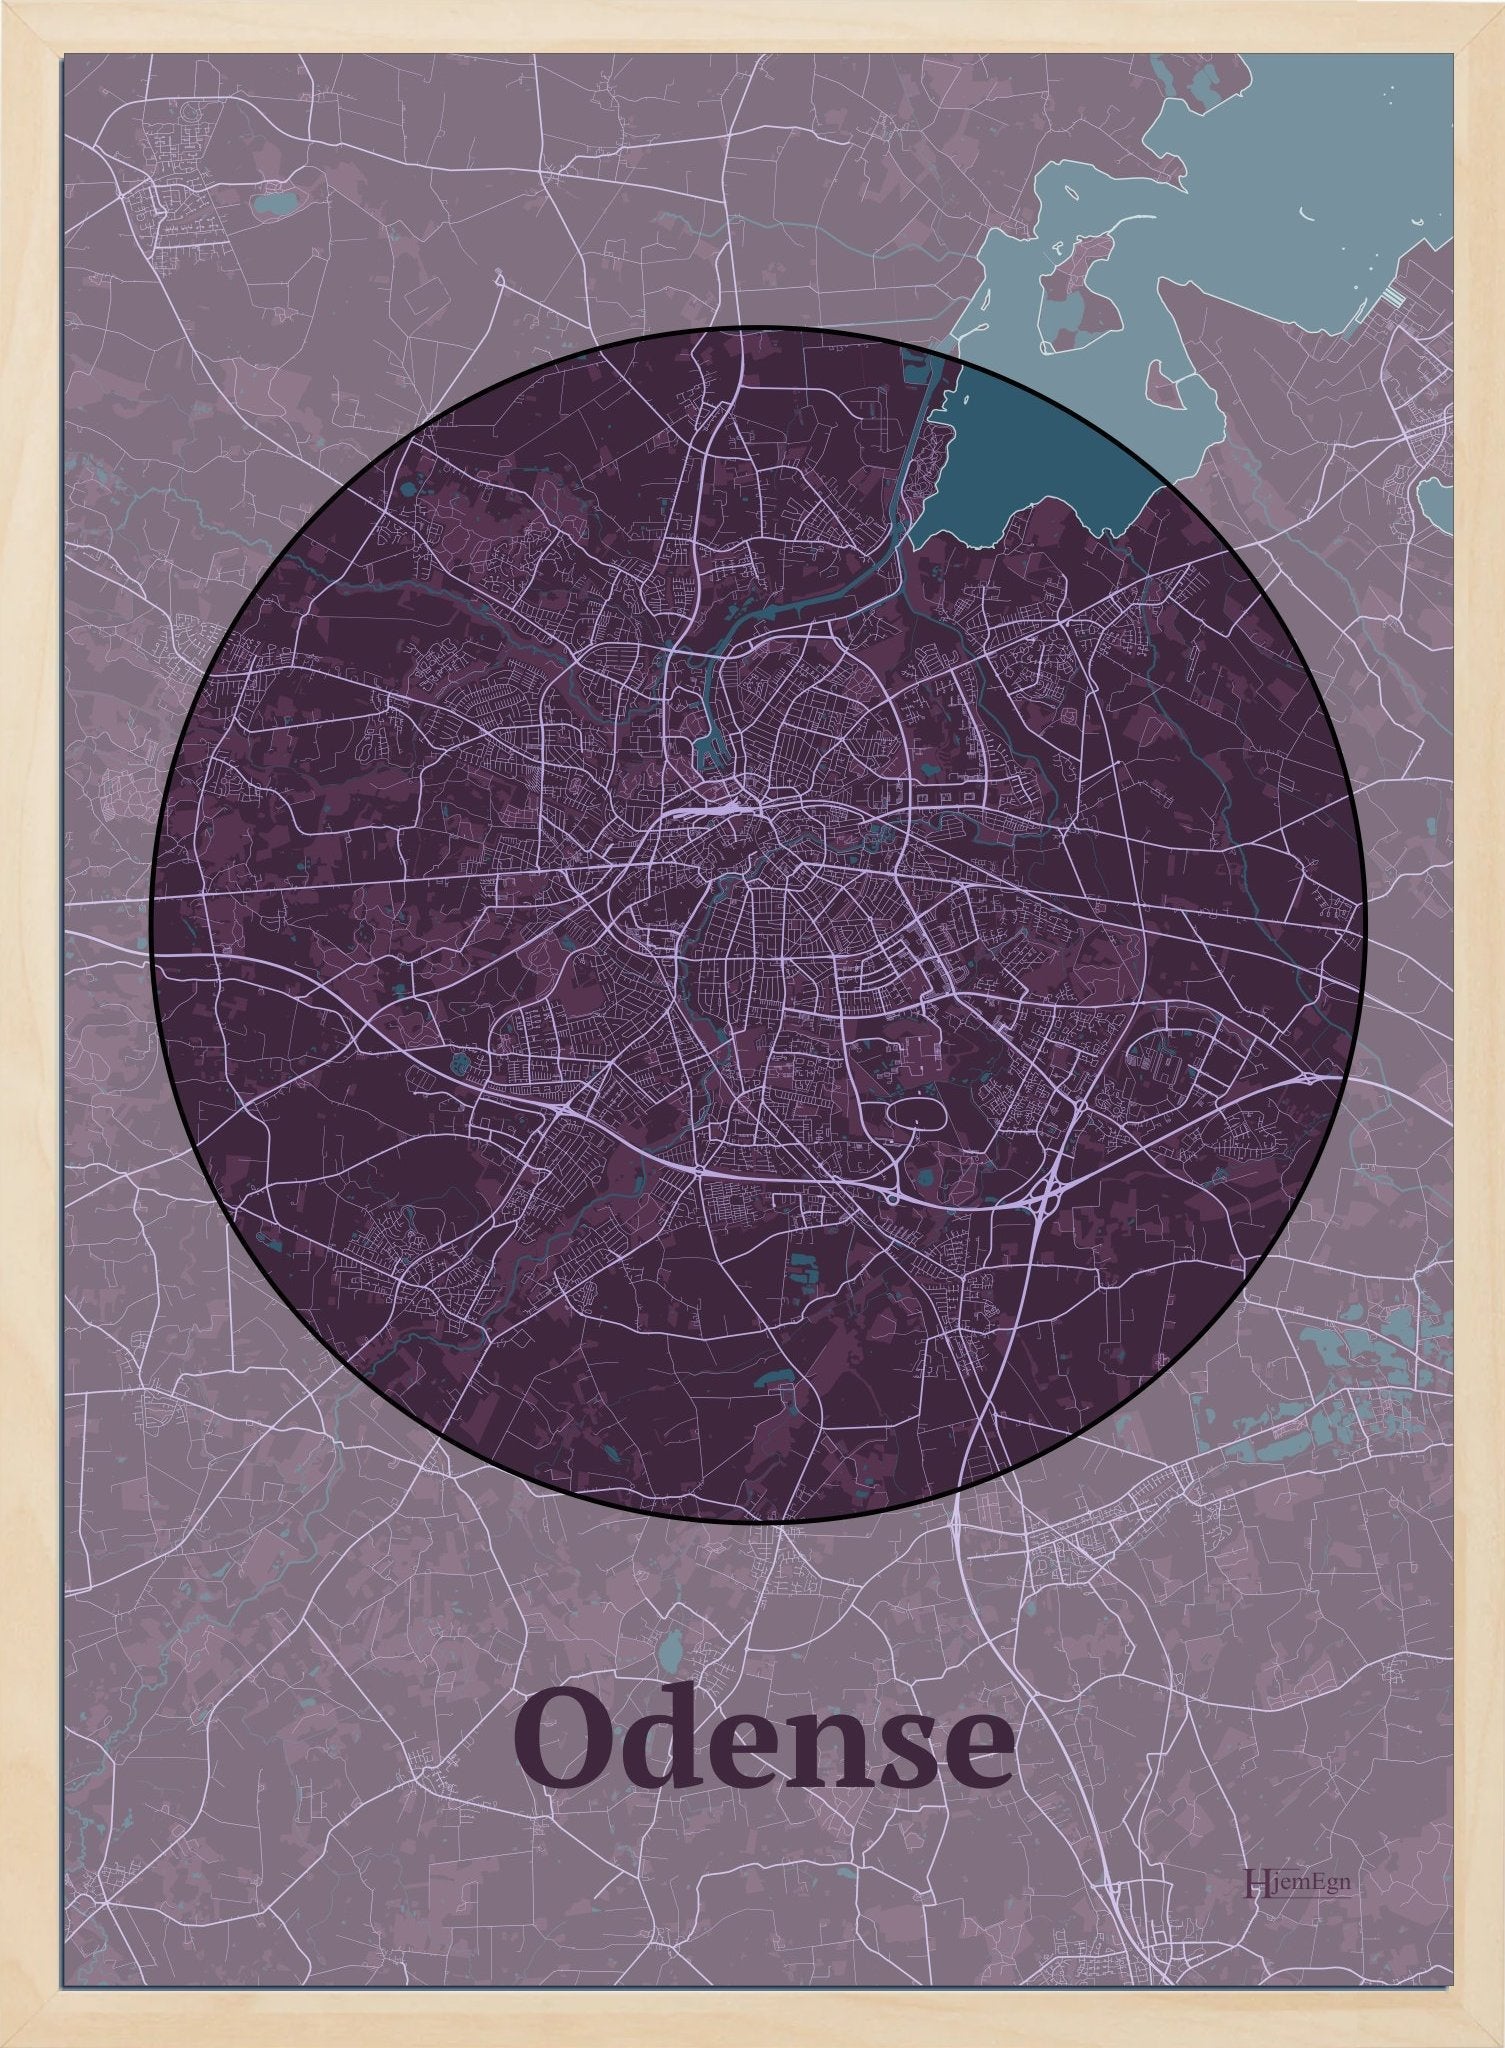 Odense plakat i farve mørk rød og HjemEgn.dk design centrum. Design bykort for Odense